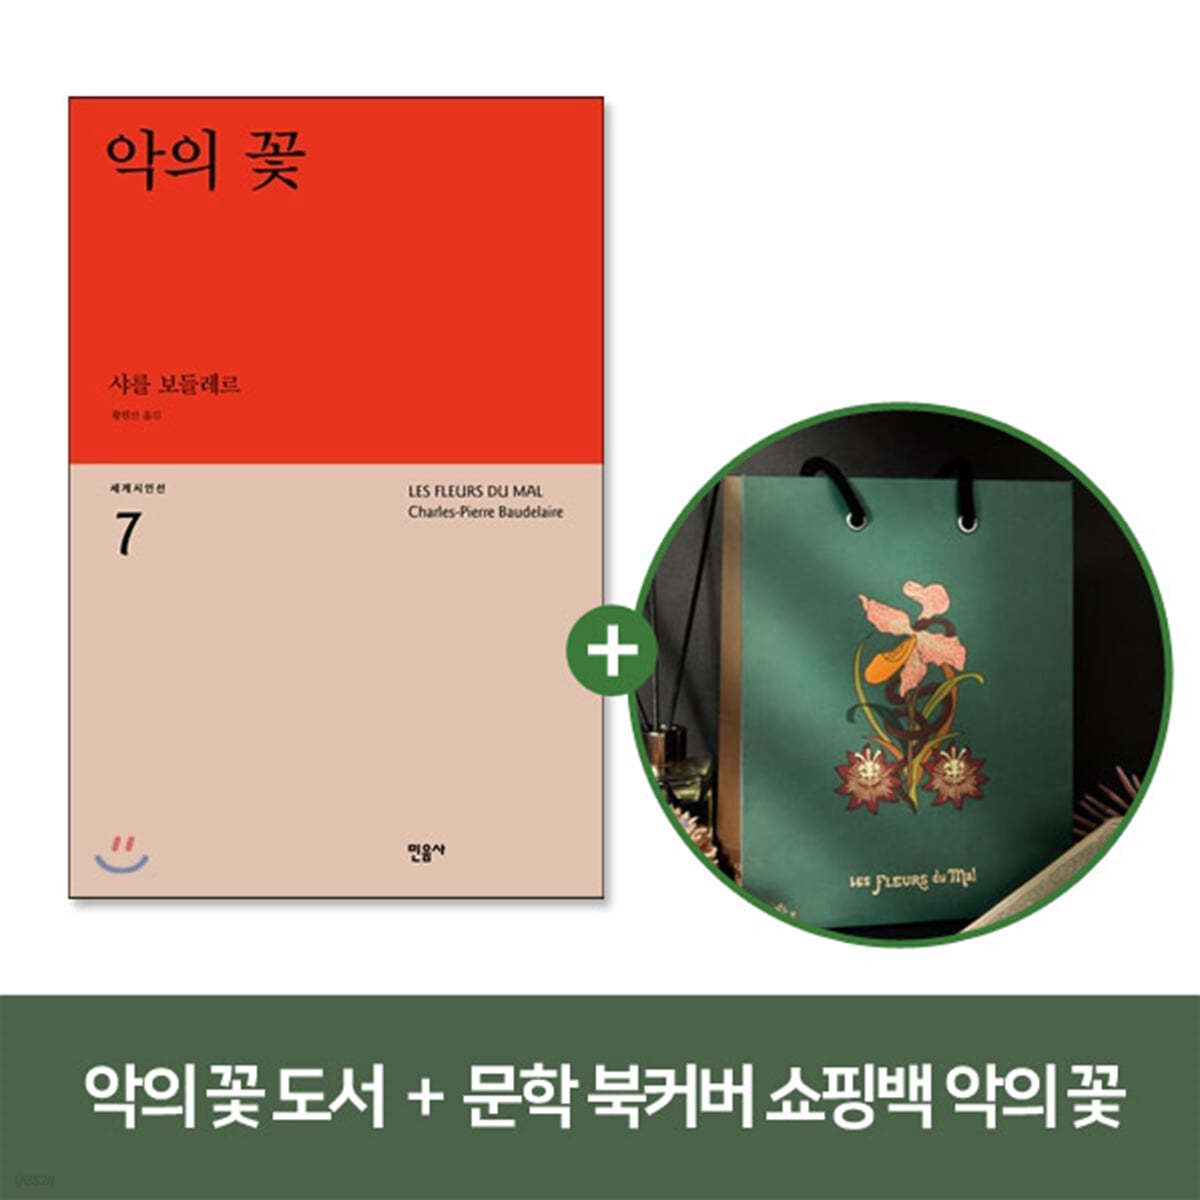 [YES24] 악의 꽃 + 문학 북커버 쇼핑백 - 악의 꽃